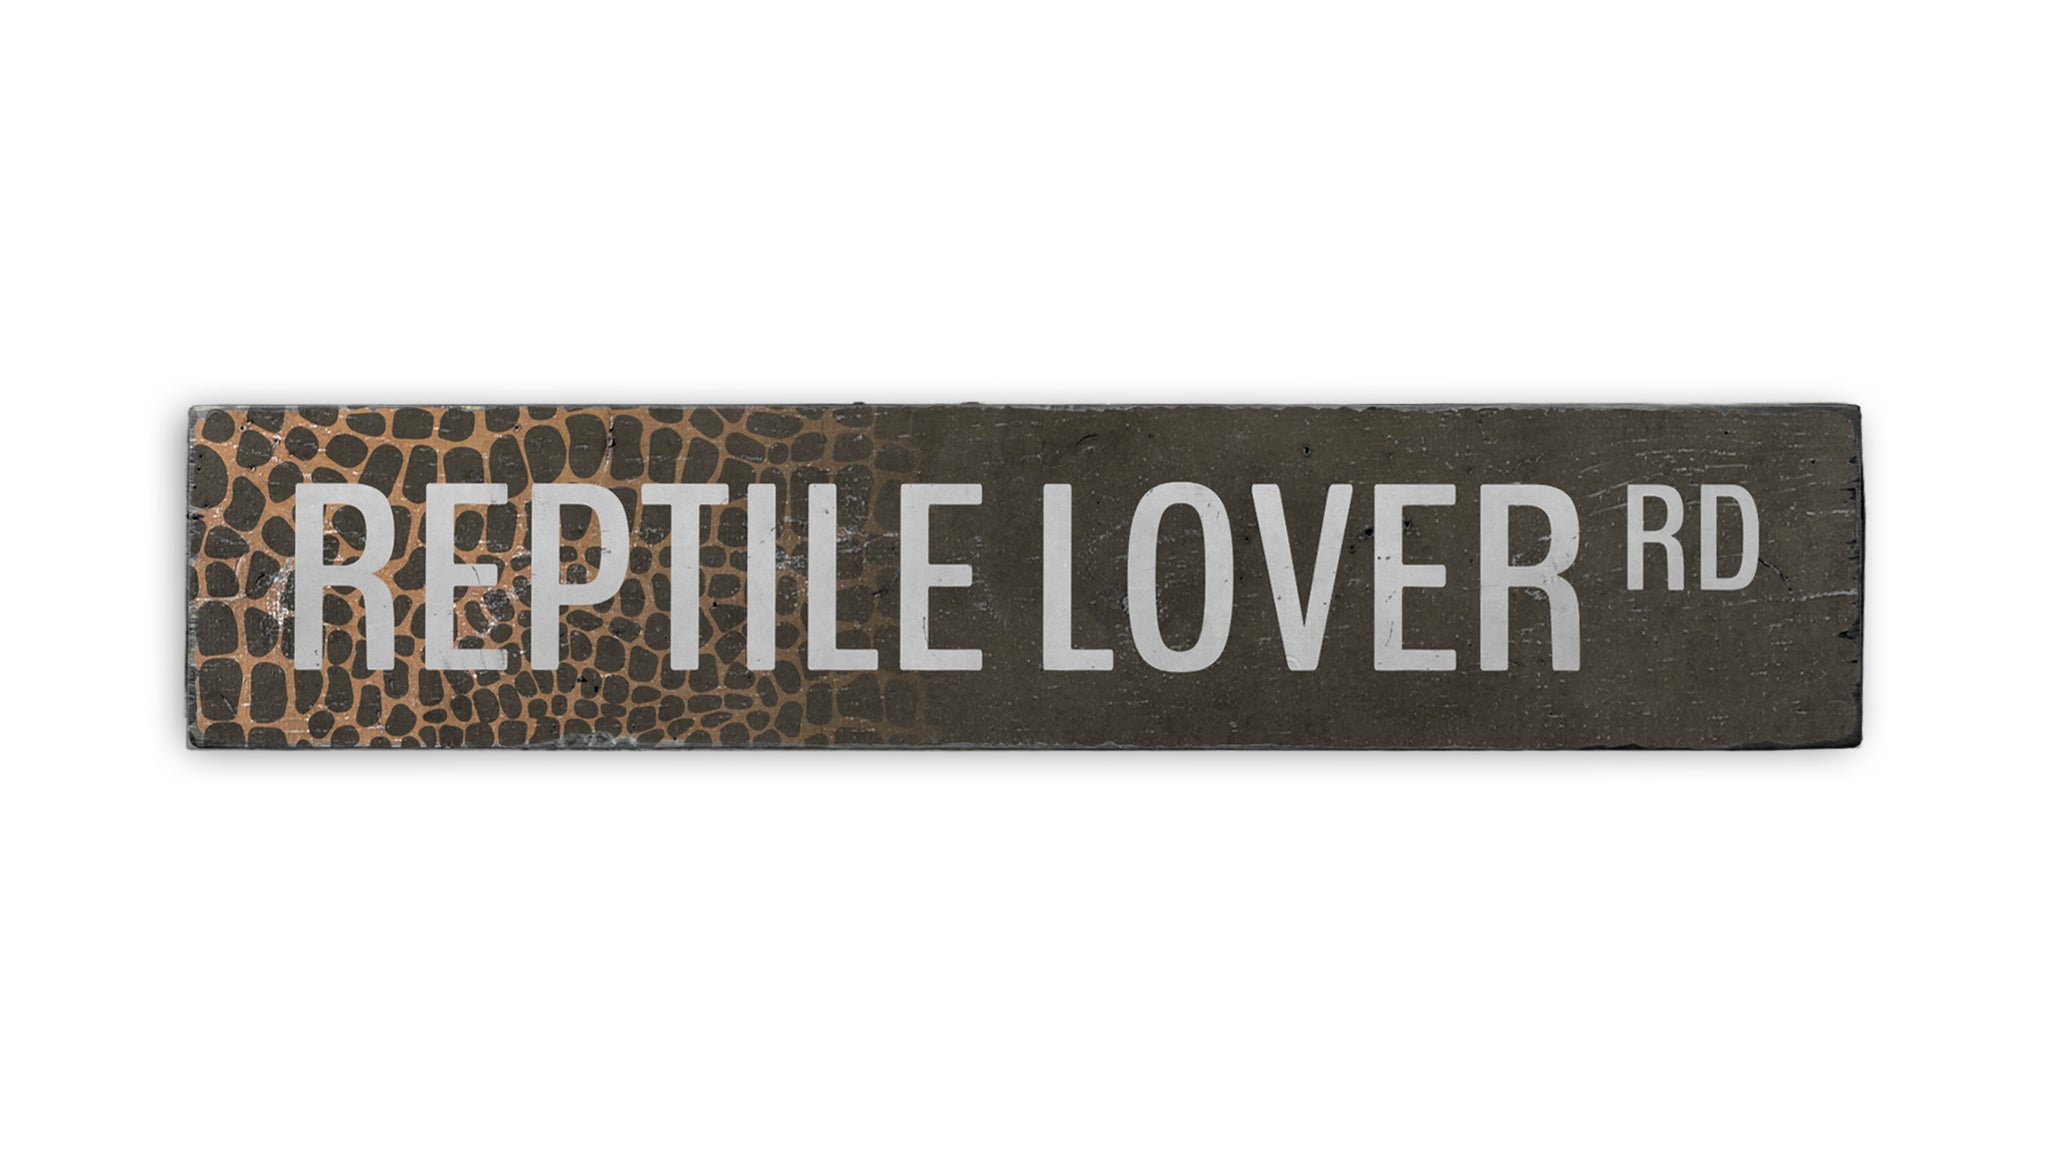 Reptile Lover Road Rustic Wood Sign